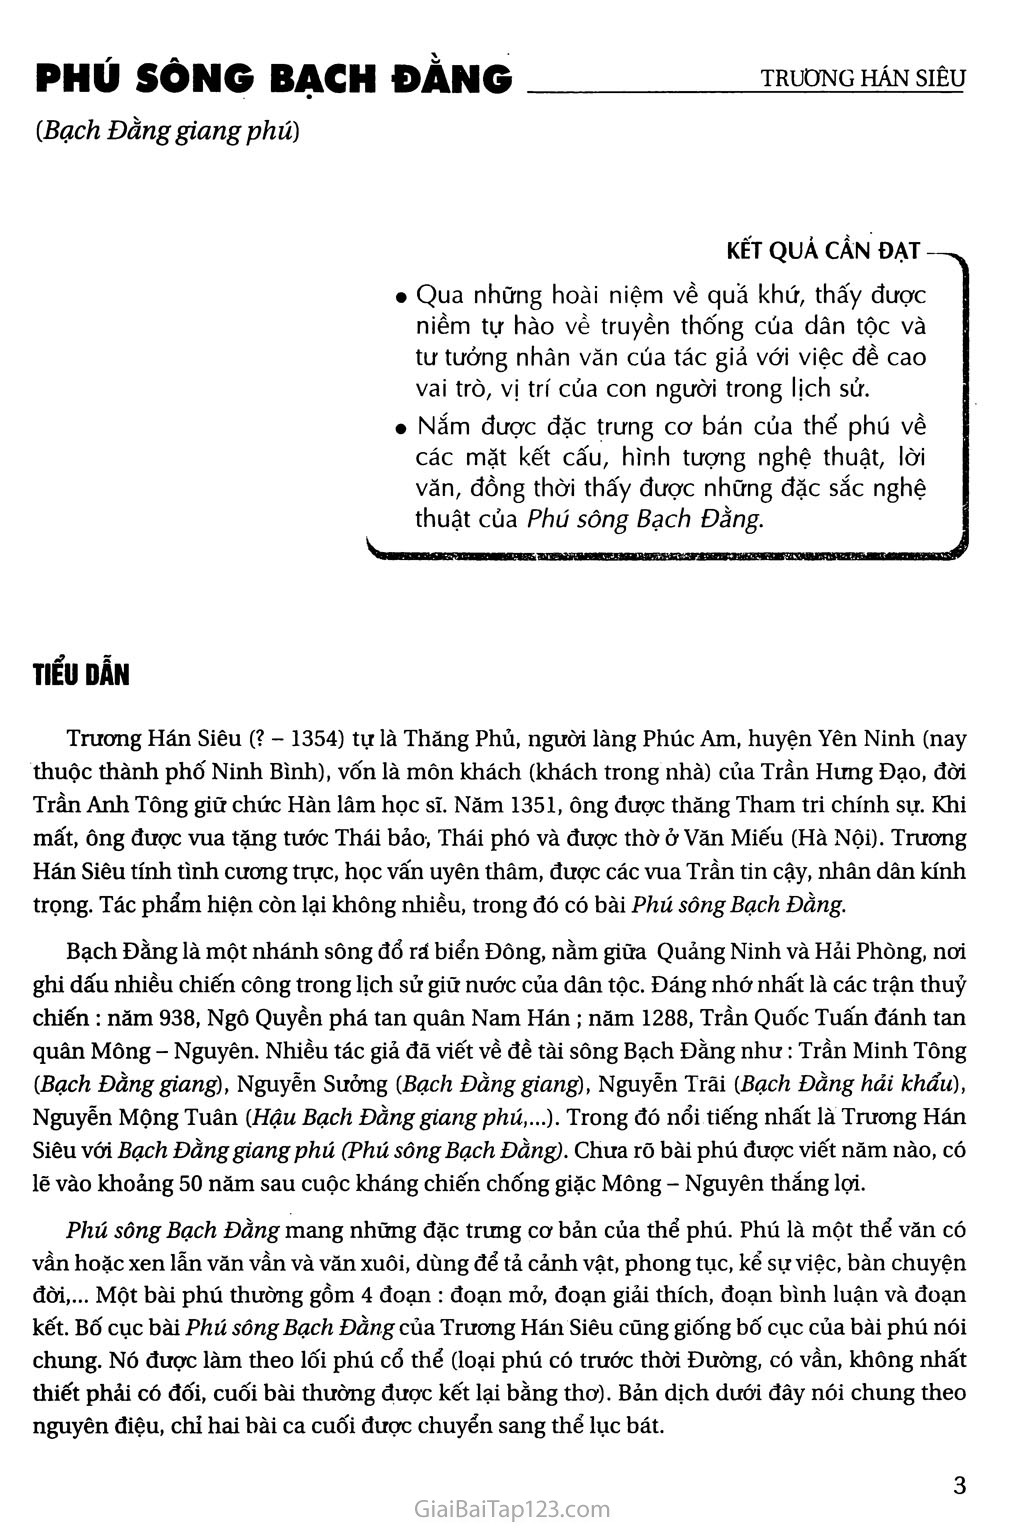 Phú sông Bạch Đằng (Bạch Đằng giang phú) trang 1